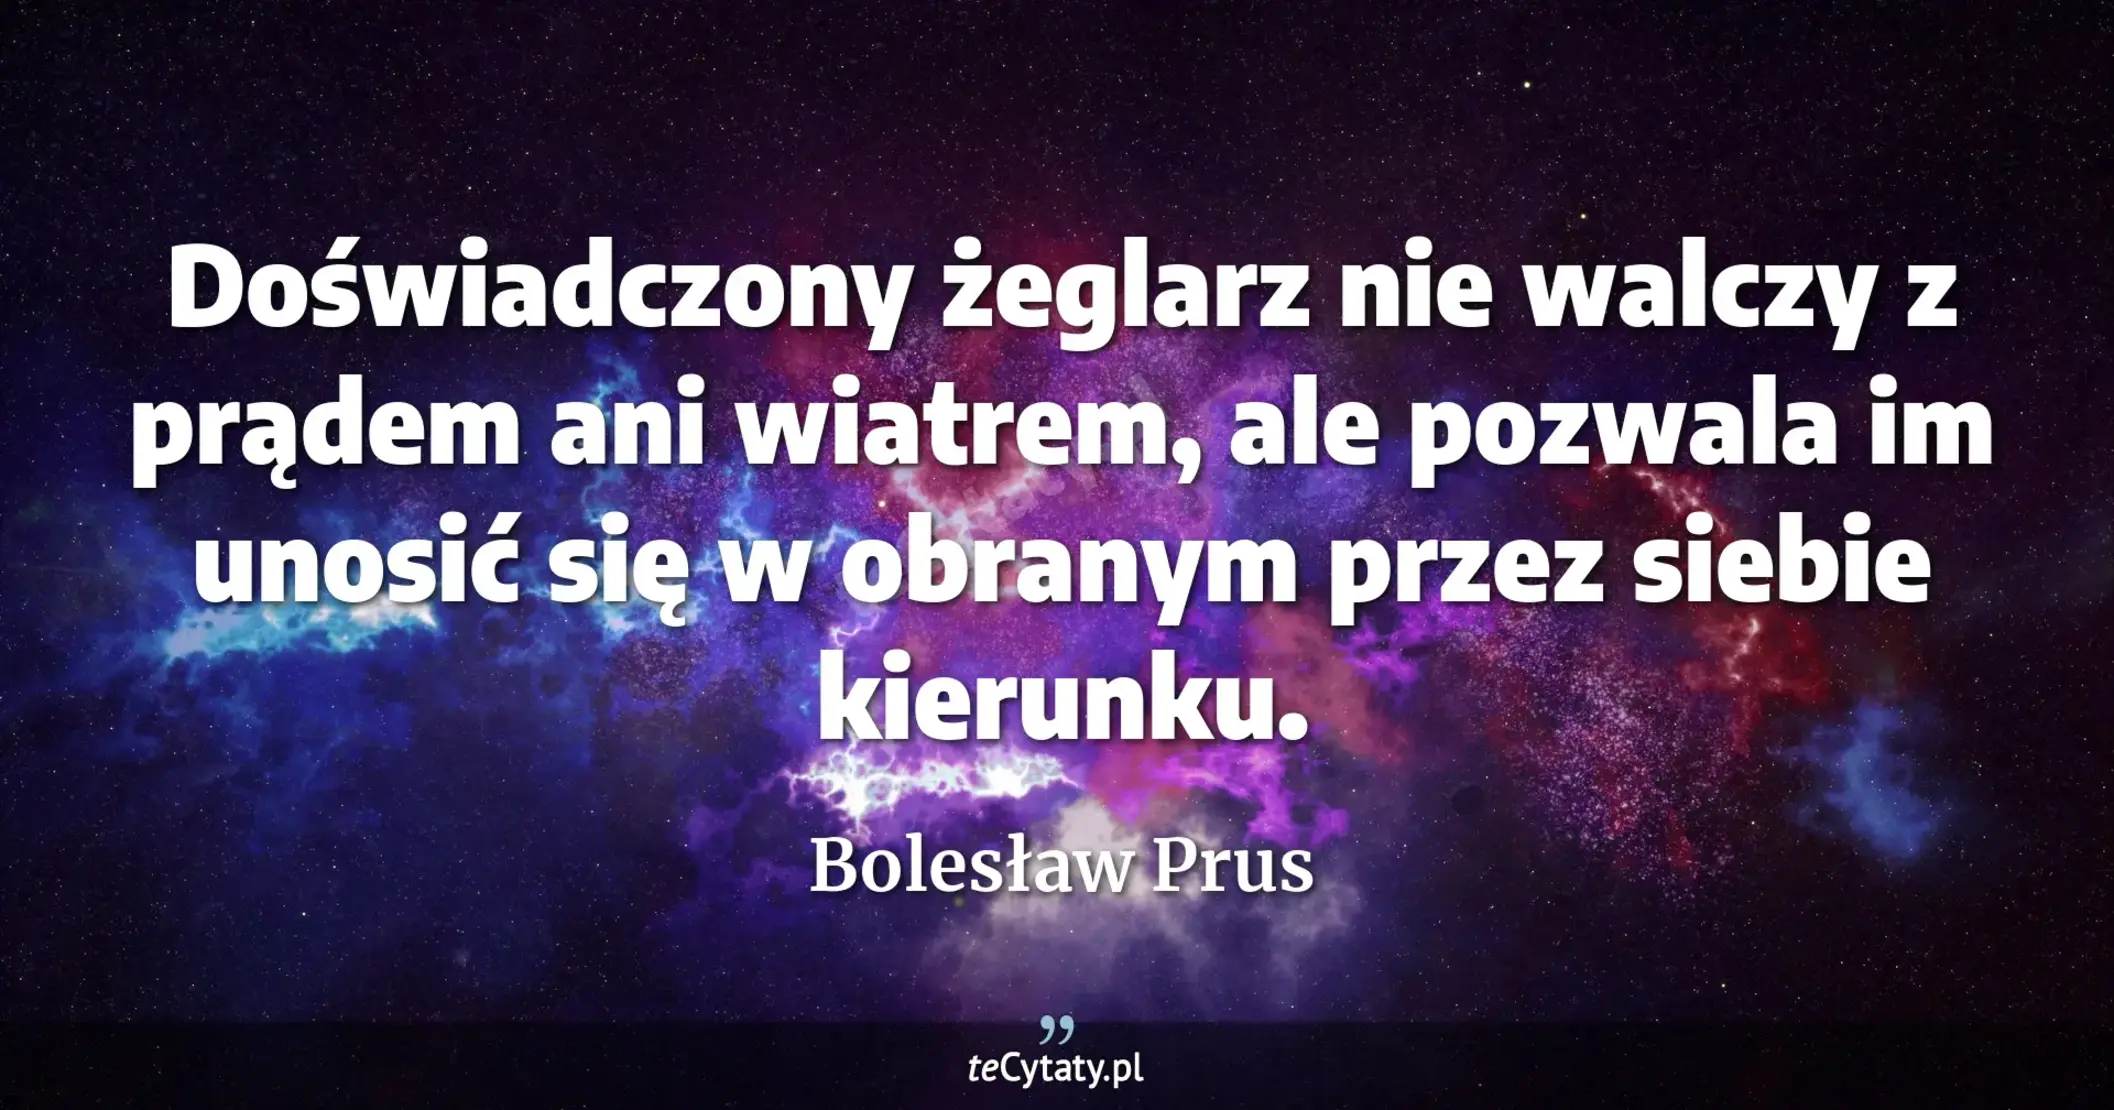 Doświadczony żeglarz nie walczy z prądem ani wiatrem, ale pozwala im unosić się w obranym przez siebie kierunku. - Bolesław Prus